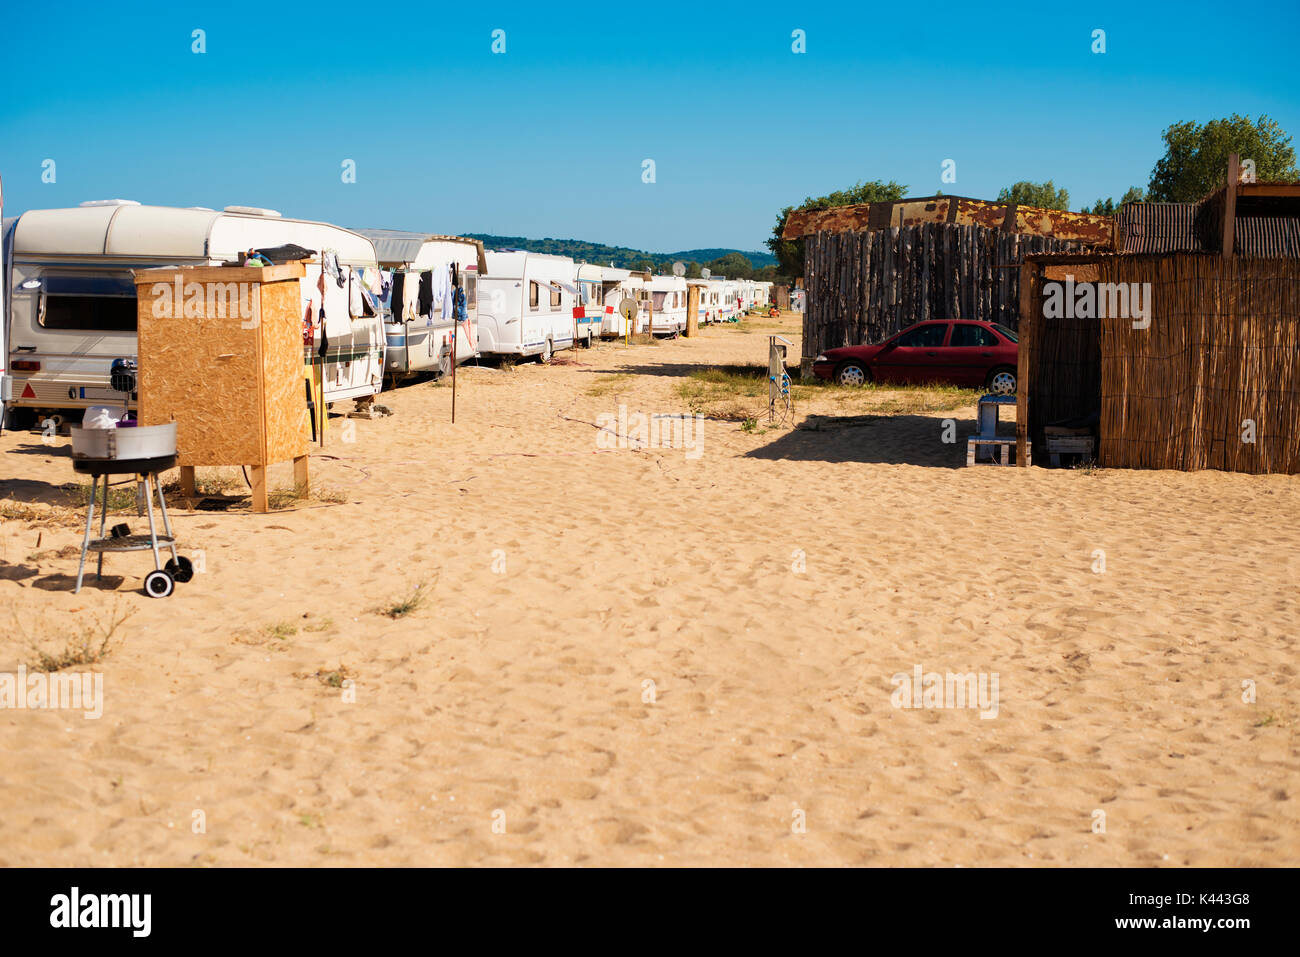 Camping sur la plage avec des caravanes. Les campeurs sur le sable, de la mer Noire, Bulgarie Banque D'Images